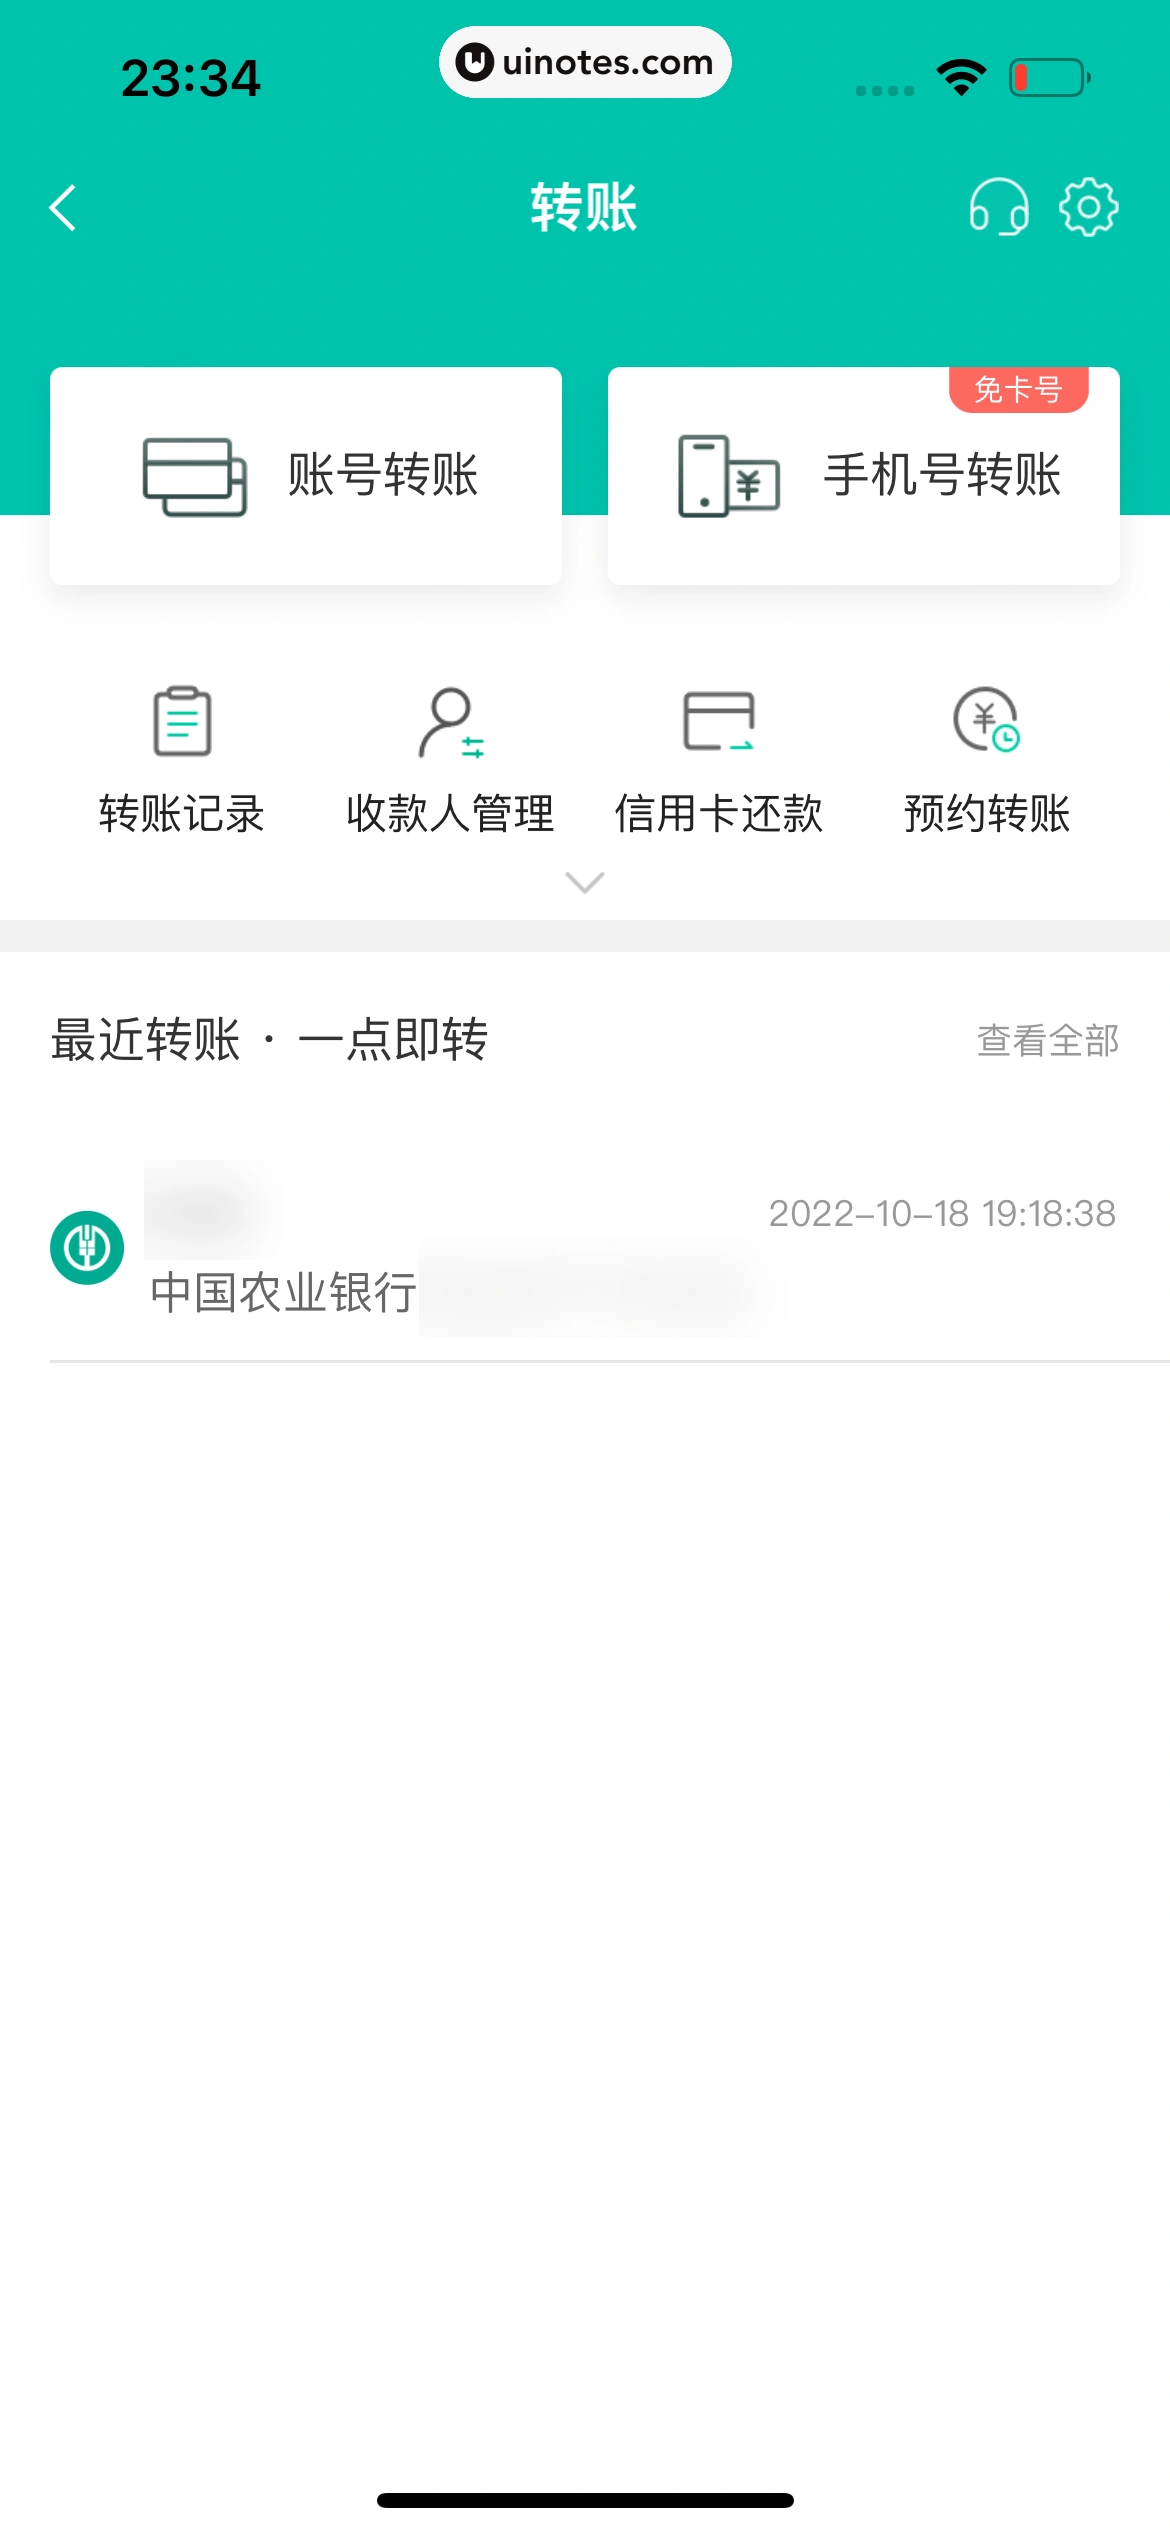 中国农业银行 App 截图 078 - UI Notes